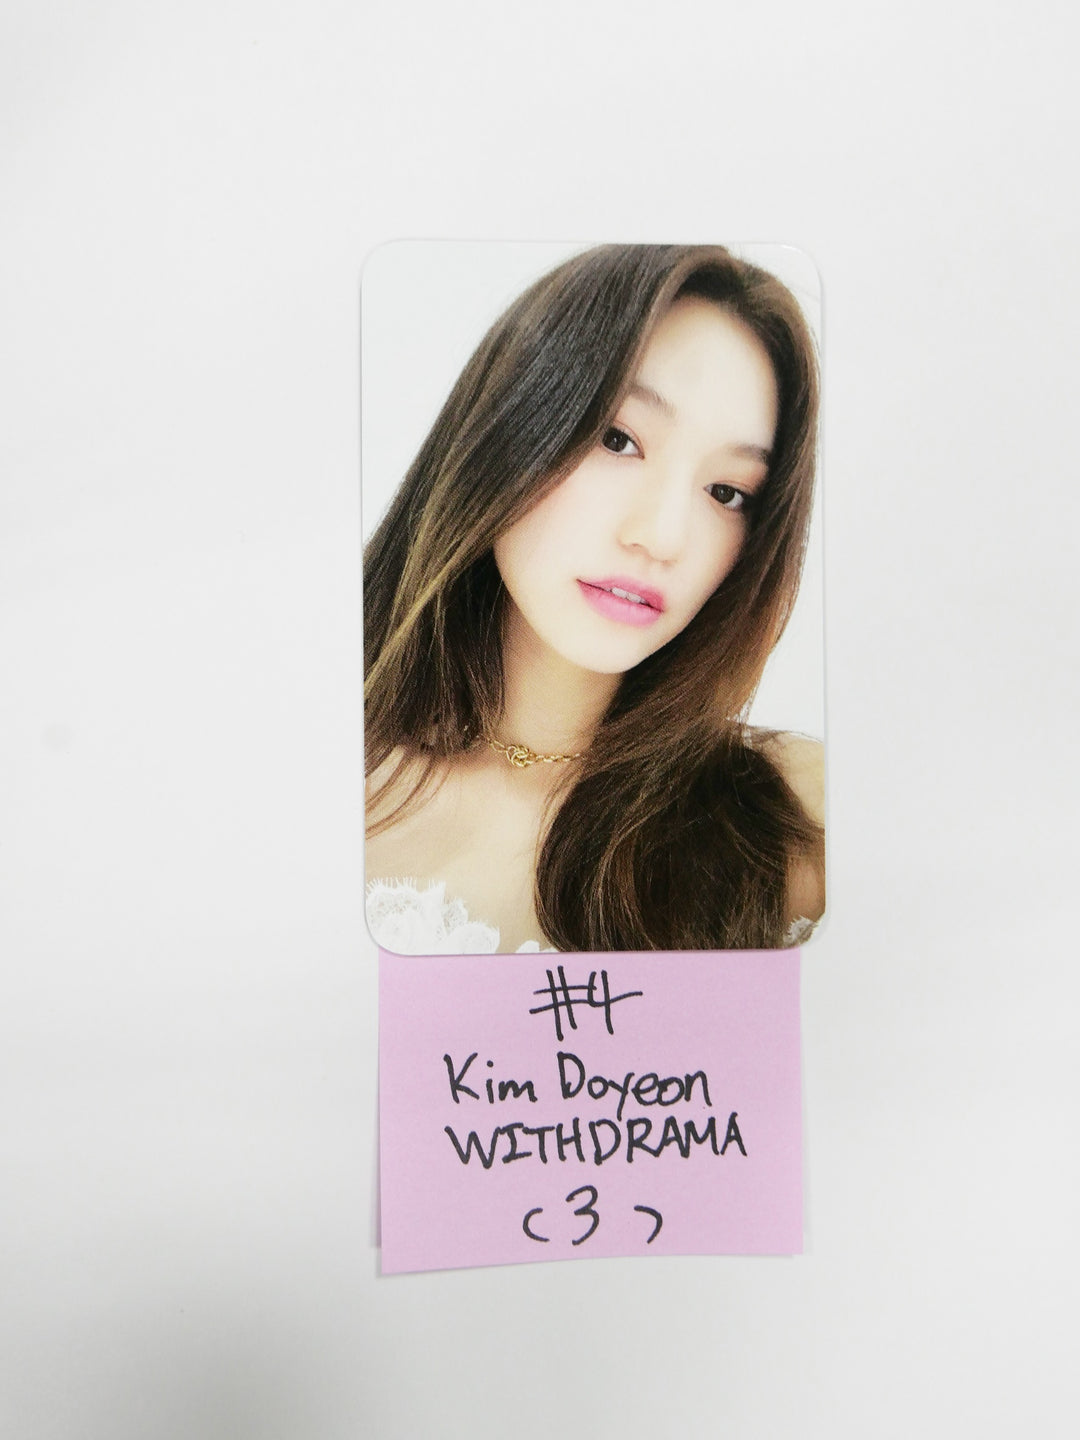 Wekimeki 'I AM ME' - Withdrama 팬사인회 이벤트 포토카드